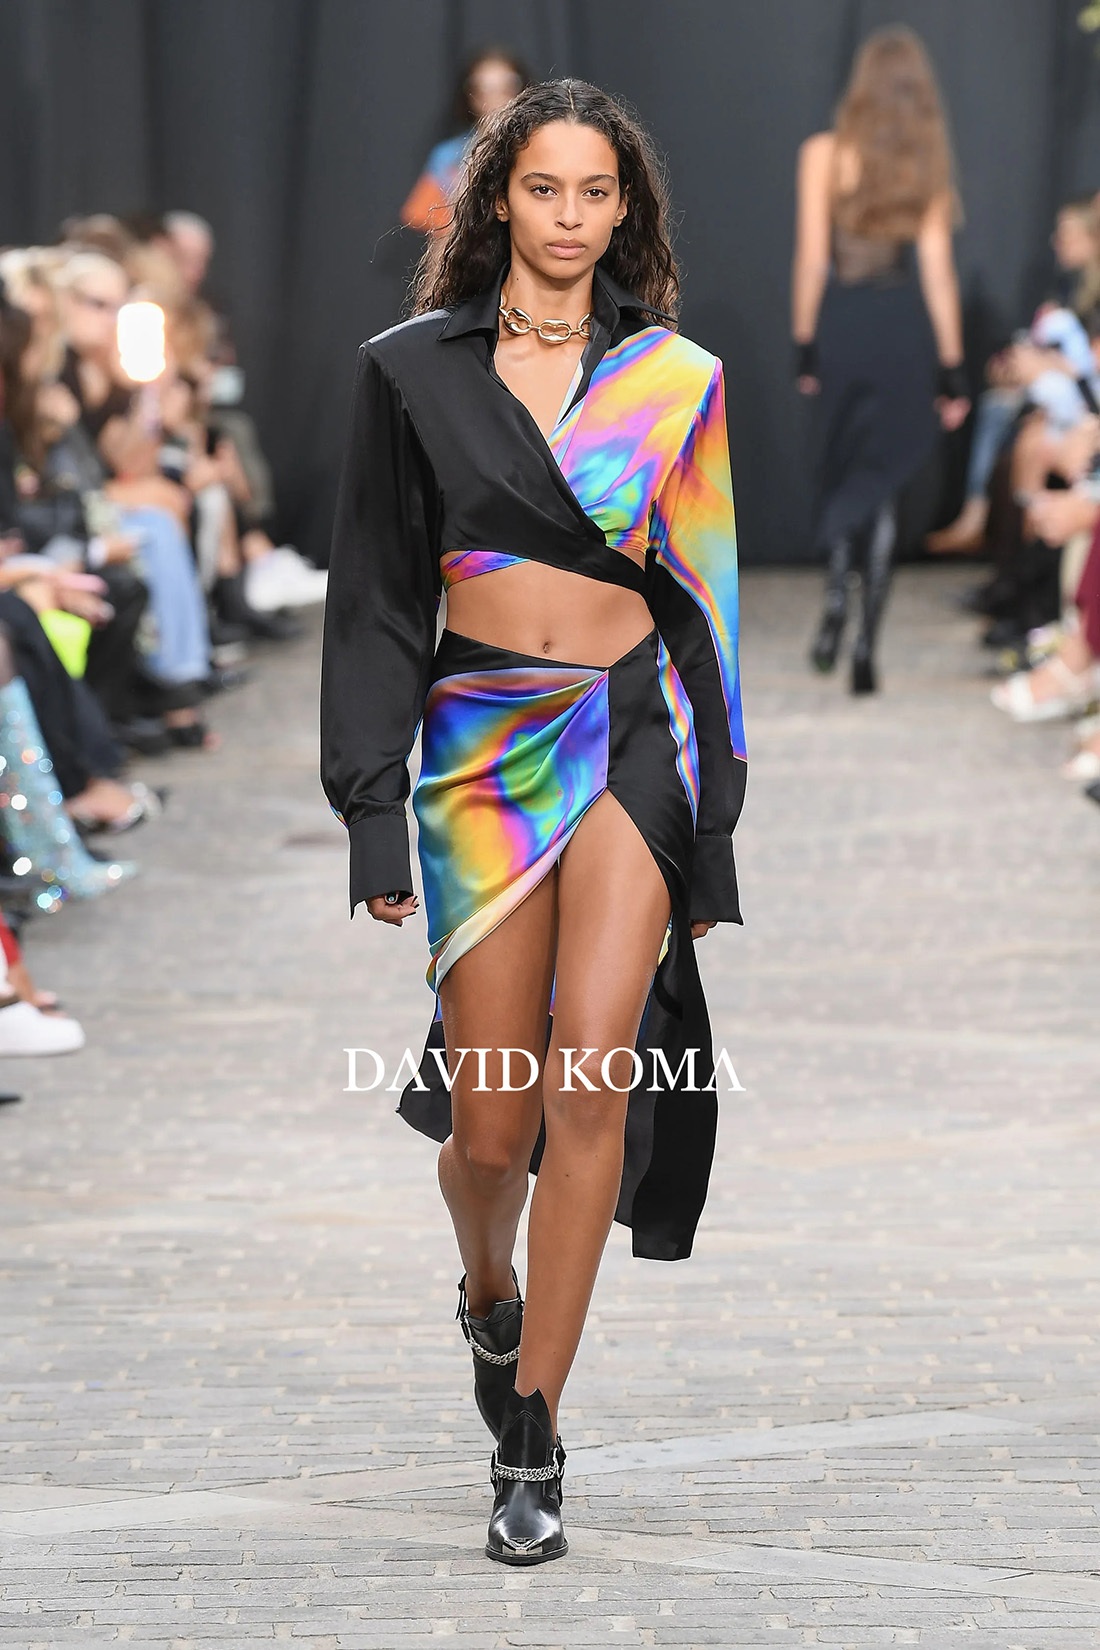 Raquel Brito runway debut at London Fashion Week